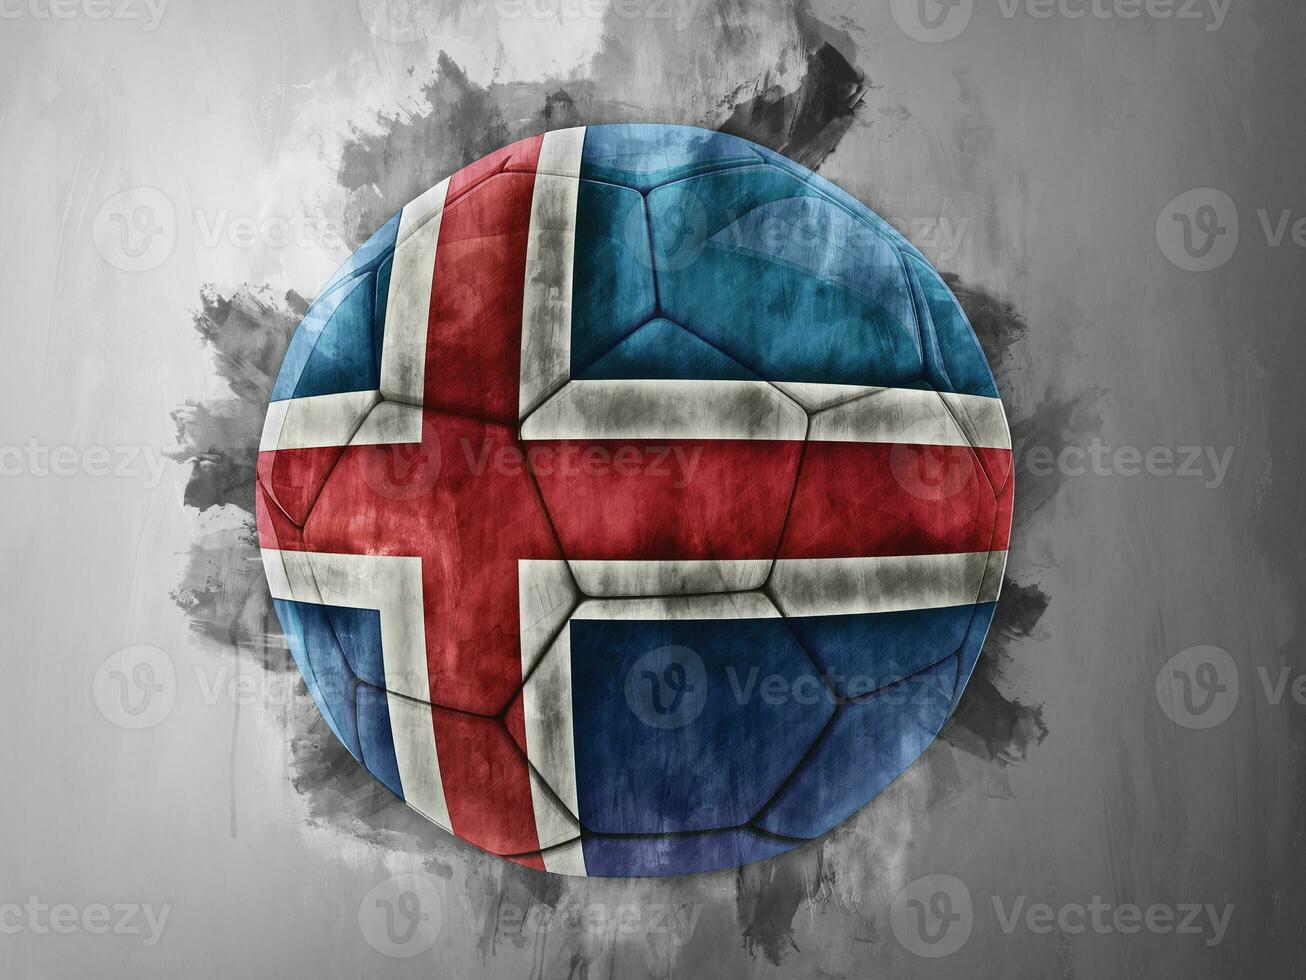 Iceland flag on a soccer ball photo